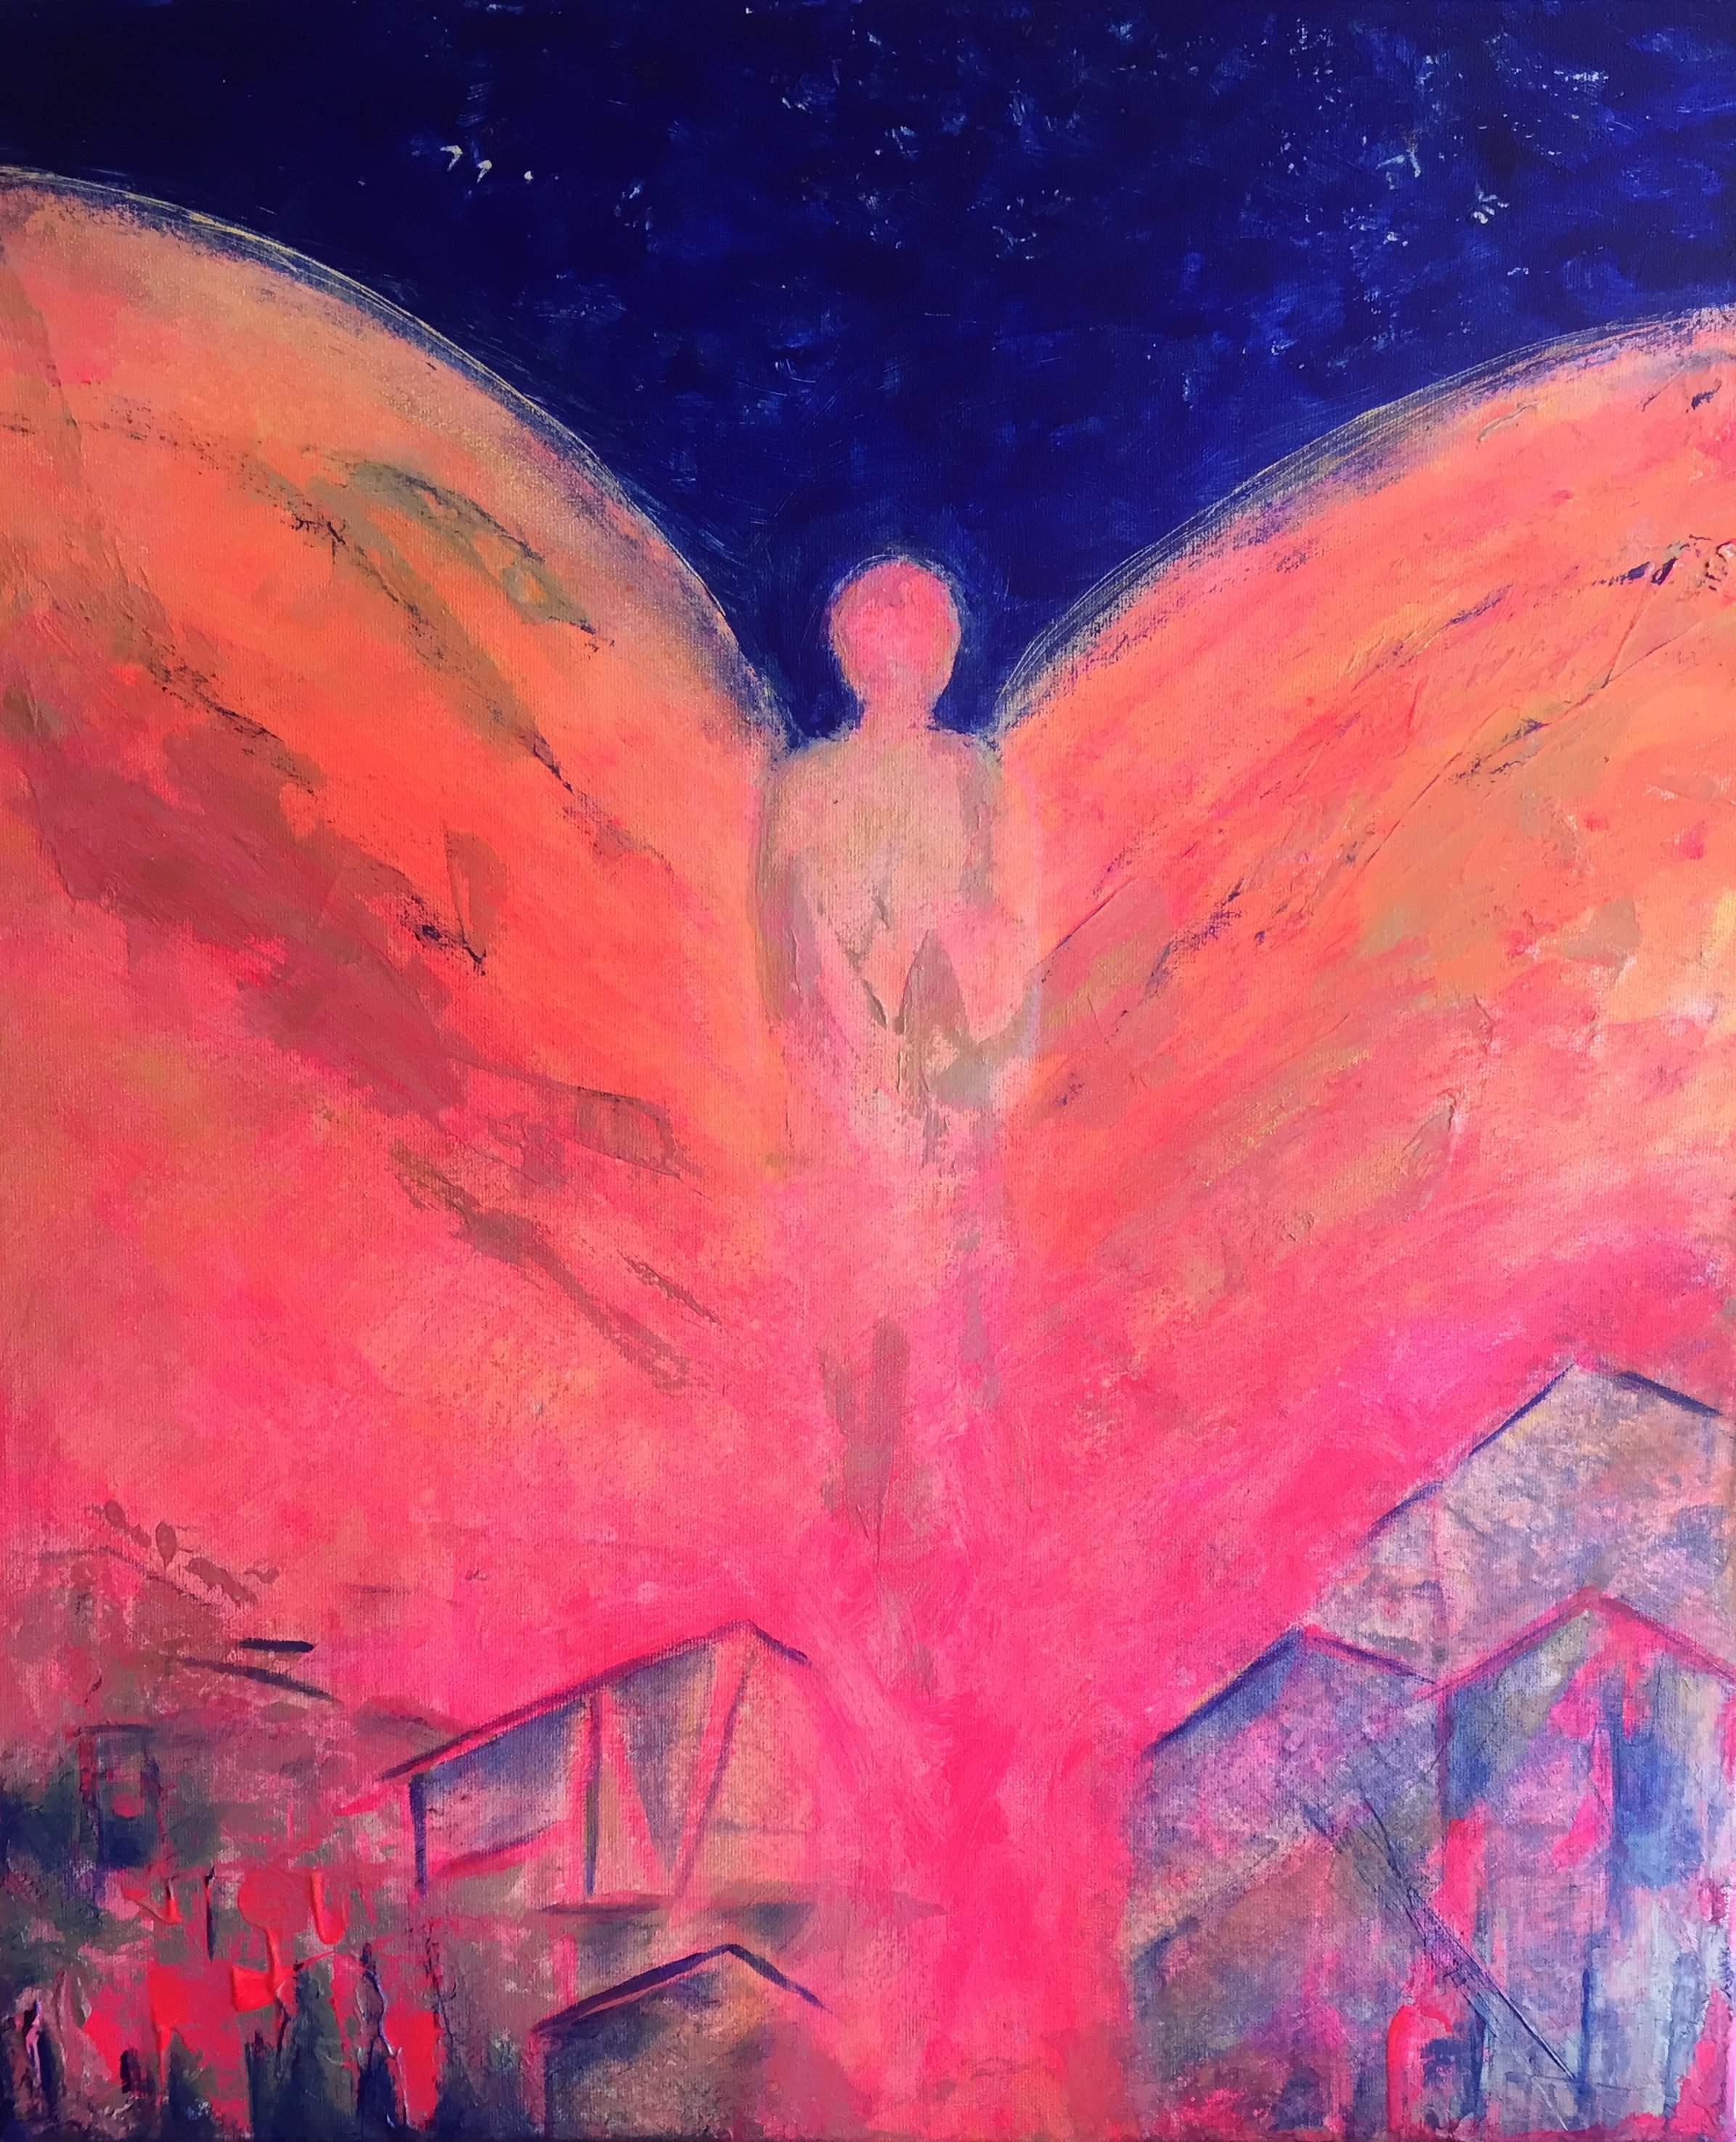 Healing in His Wings